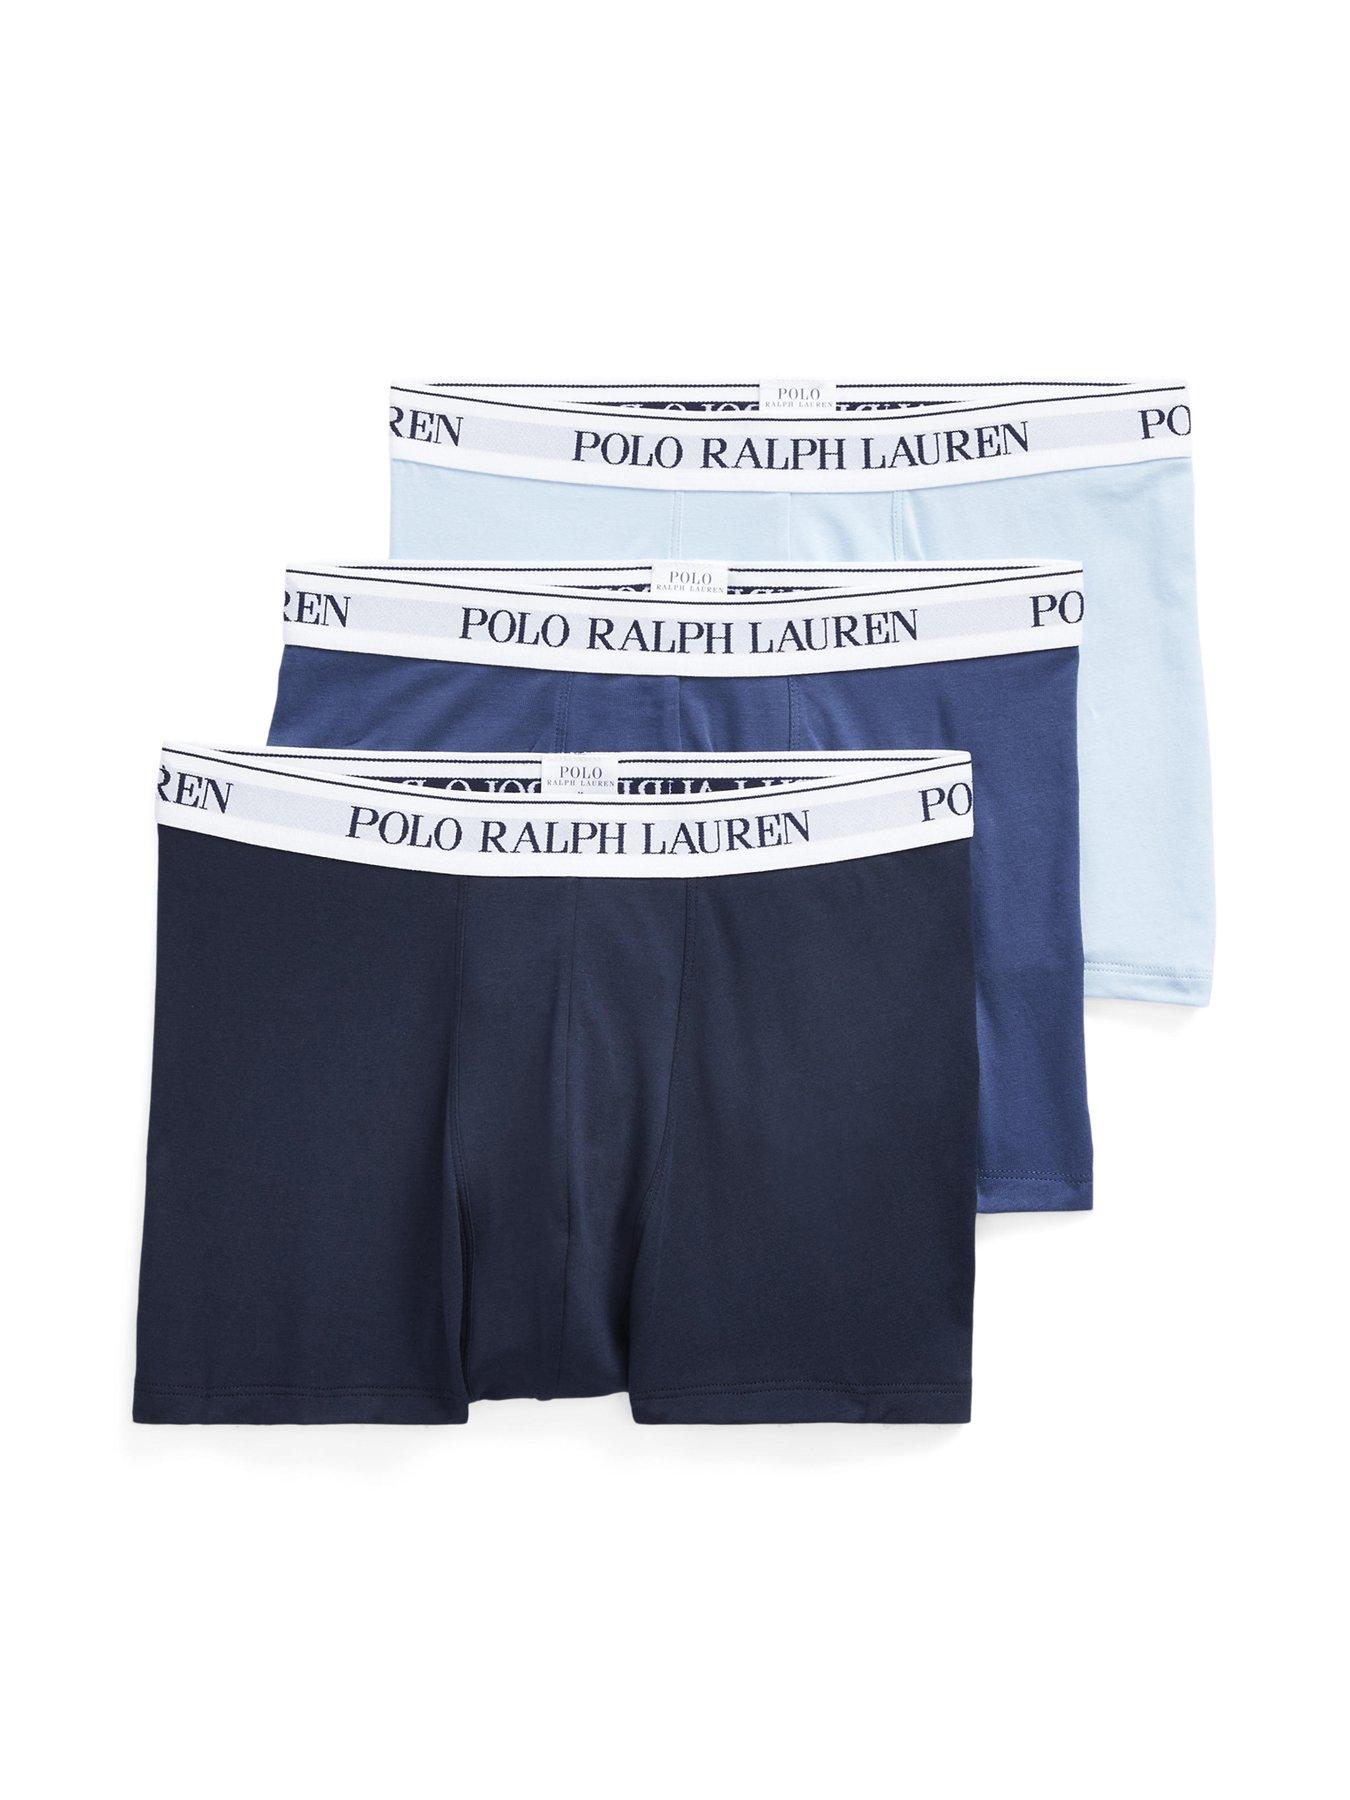 Men's Polo Ralph Lauren Underwear, 100% Cotton, Size L, 4 Pack